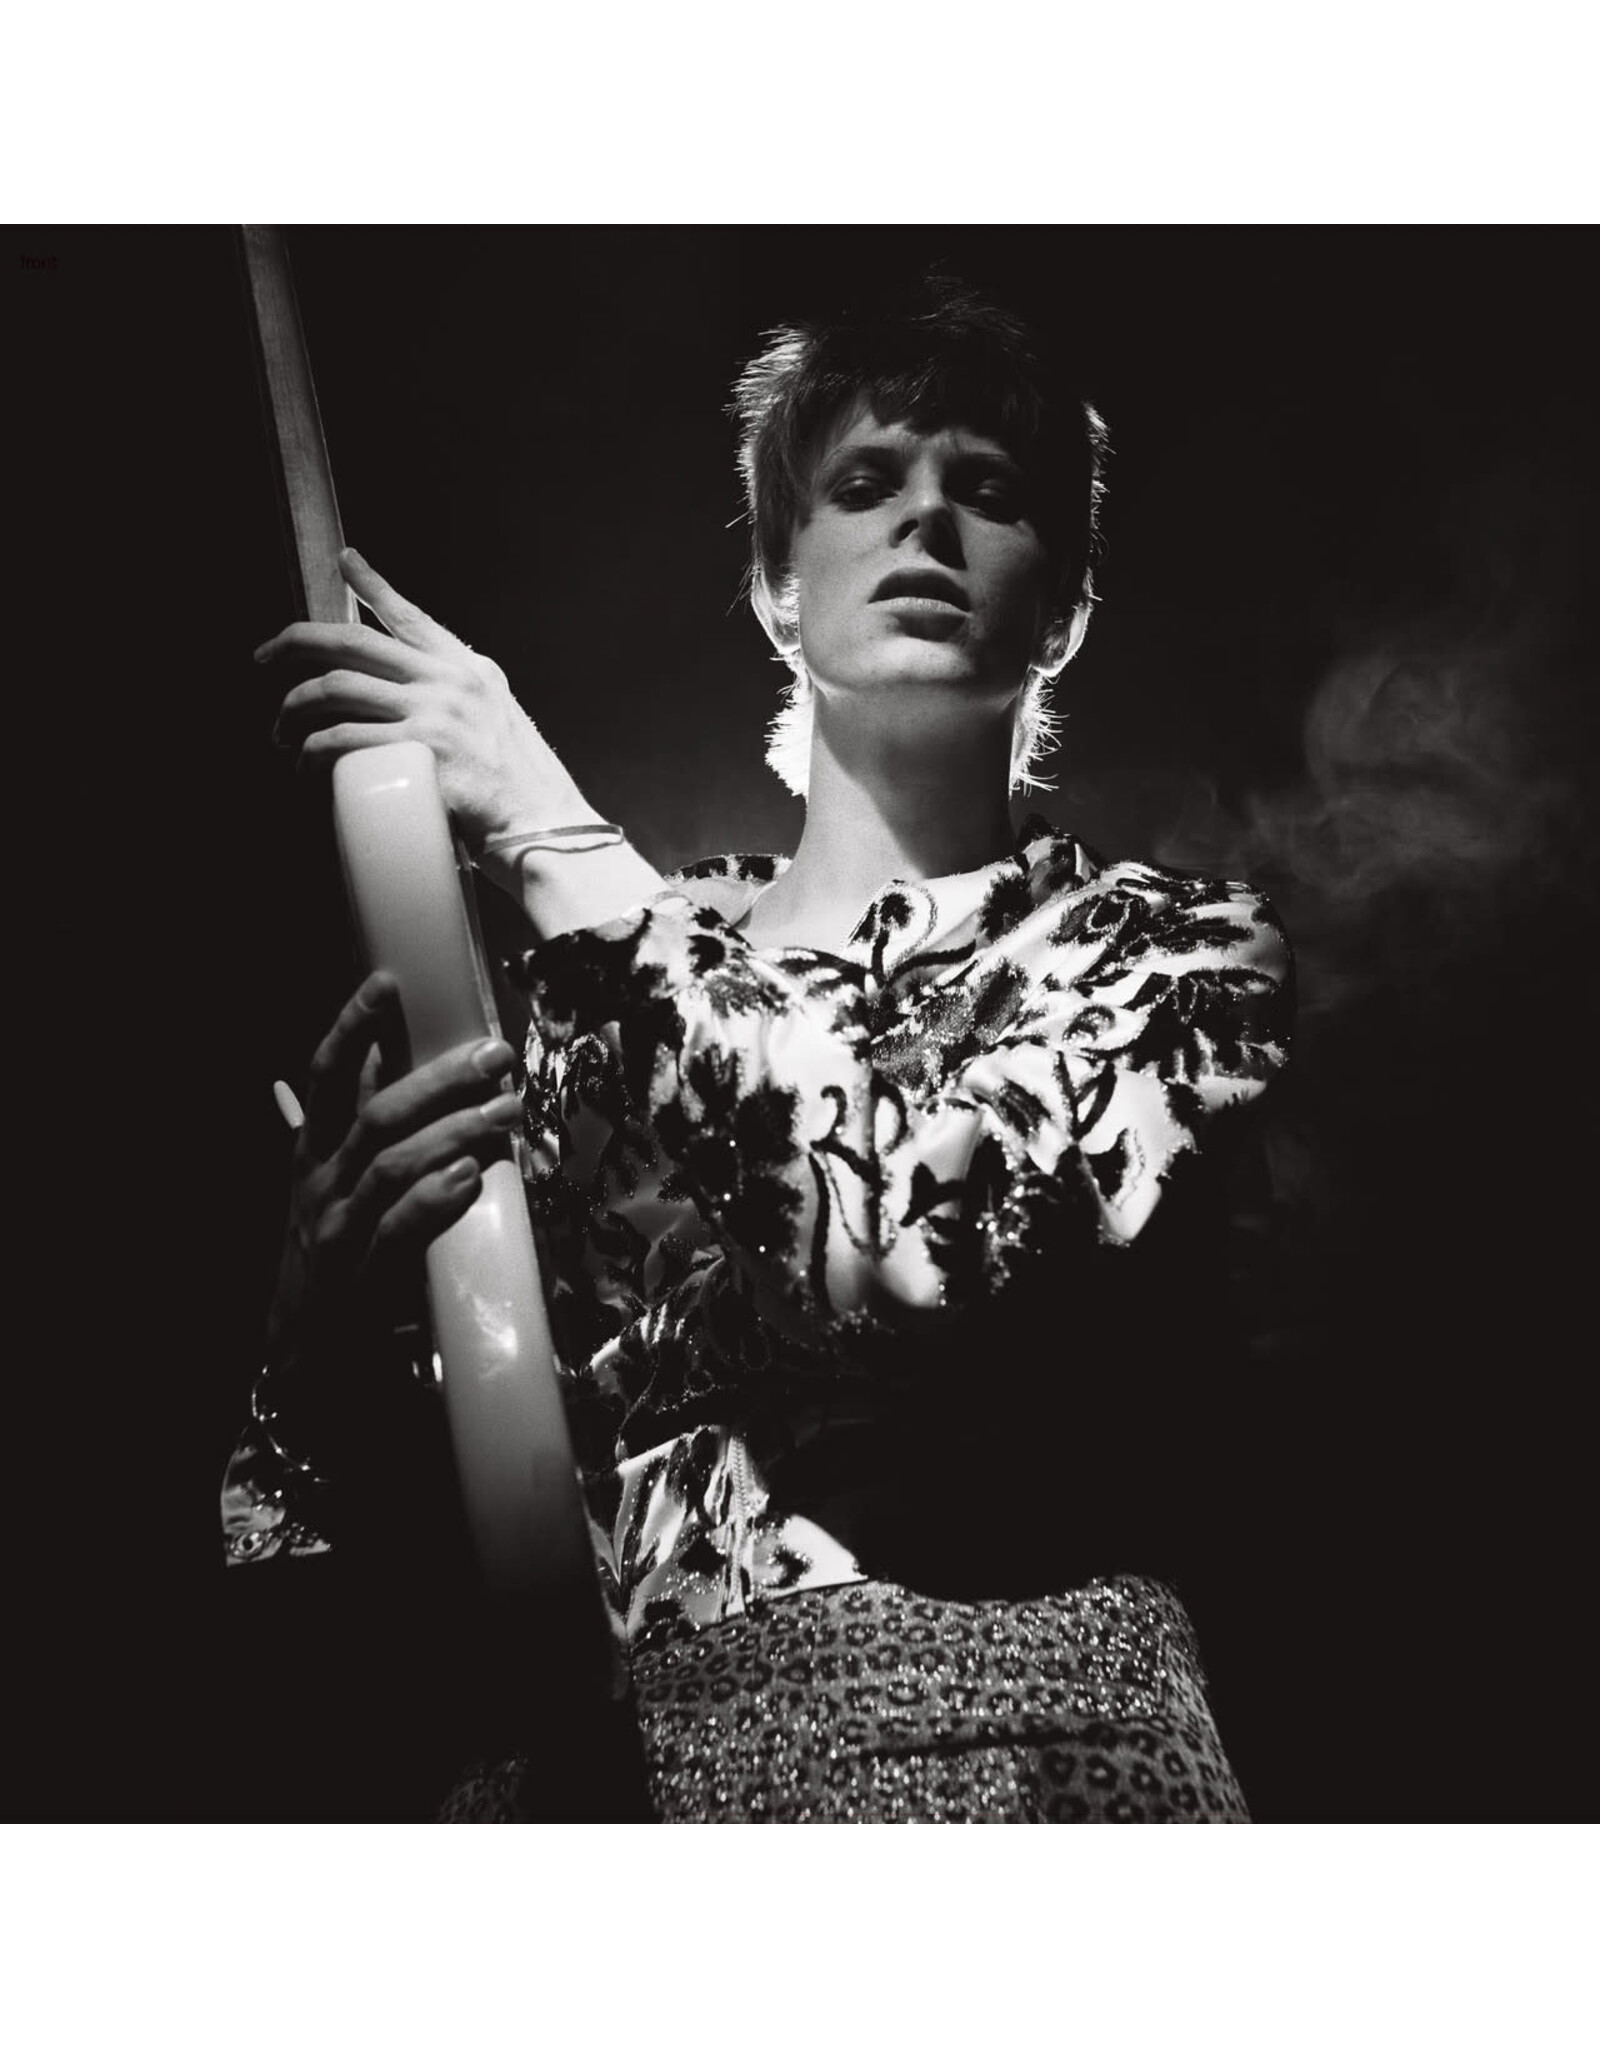 David Bowie - Rock N' Roll Star!